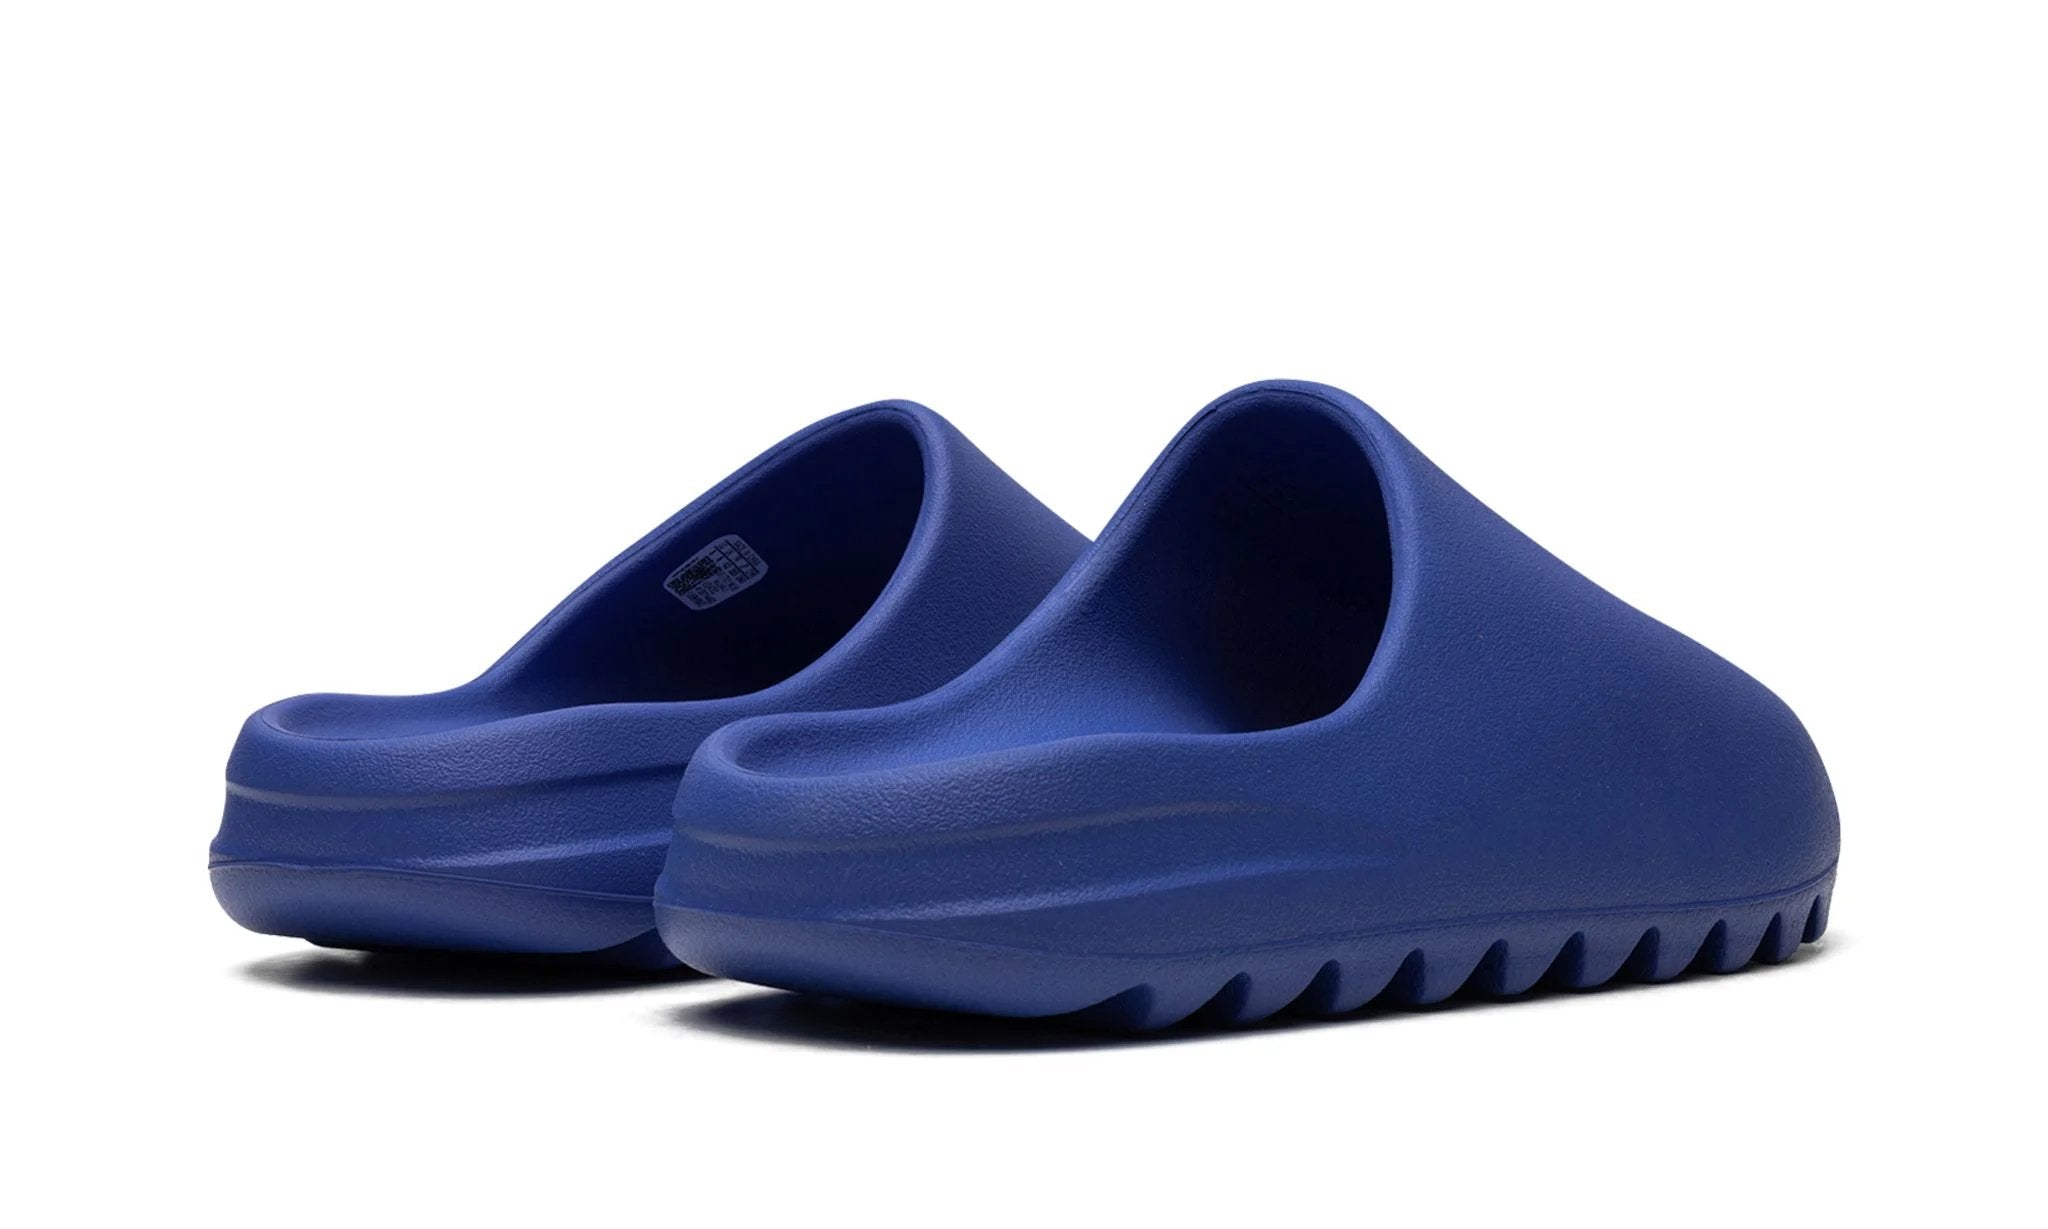 Adidas Yeezy Slide Azure - ID4133 - Sneakers